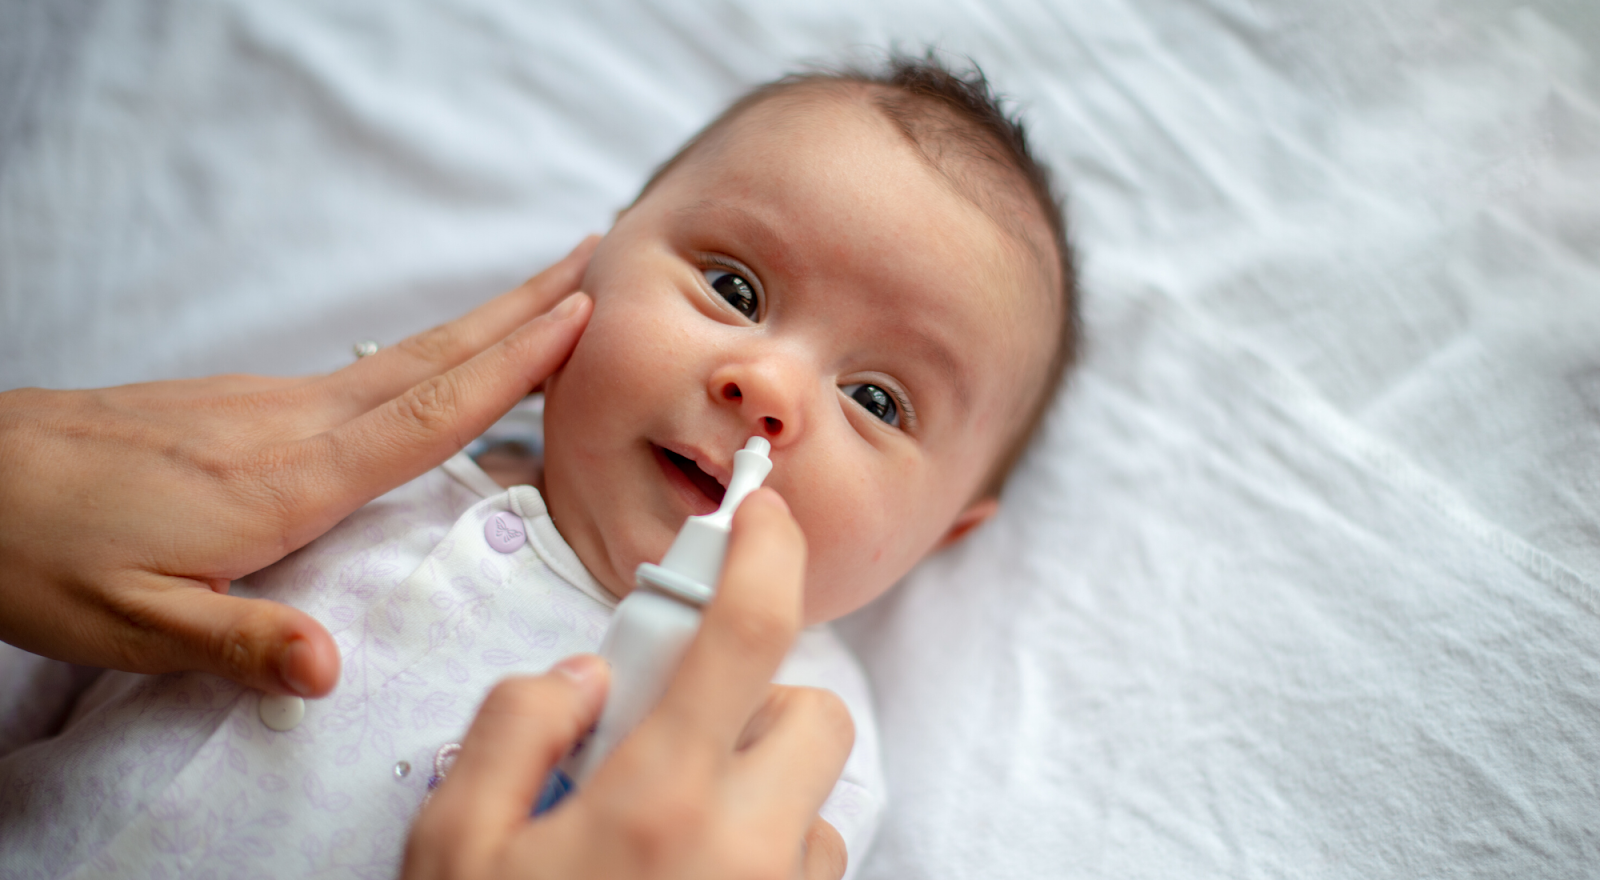 Nghẹt mũi trẻ sơ sinh: Là cha mẹ mới, việc chăm sóc trẻ sơ sinh có thể thực sự khó khăn. Nghẹt mũi là một trong những vấn đề thường gặp ở trẻ sơ sinh, nhưng đừng lo lắng, có một số giải pháp hiệu quả cho vấn đề này. Hãy xem hình ảnh để biết thêm về việc cách chăm sóc và giúp bé thoải mái hơn.